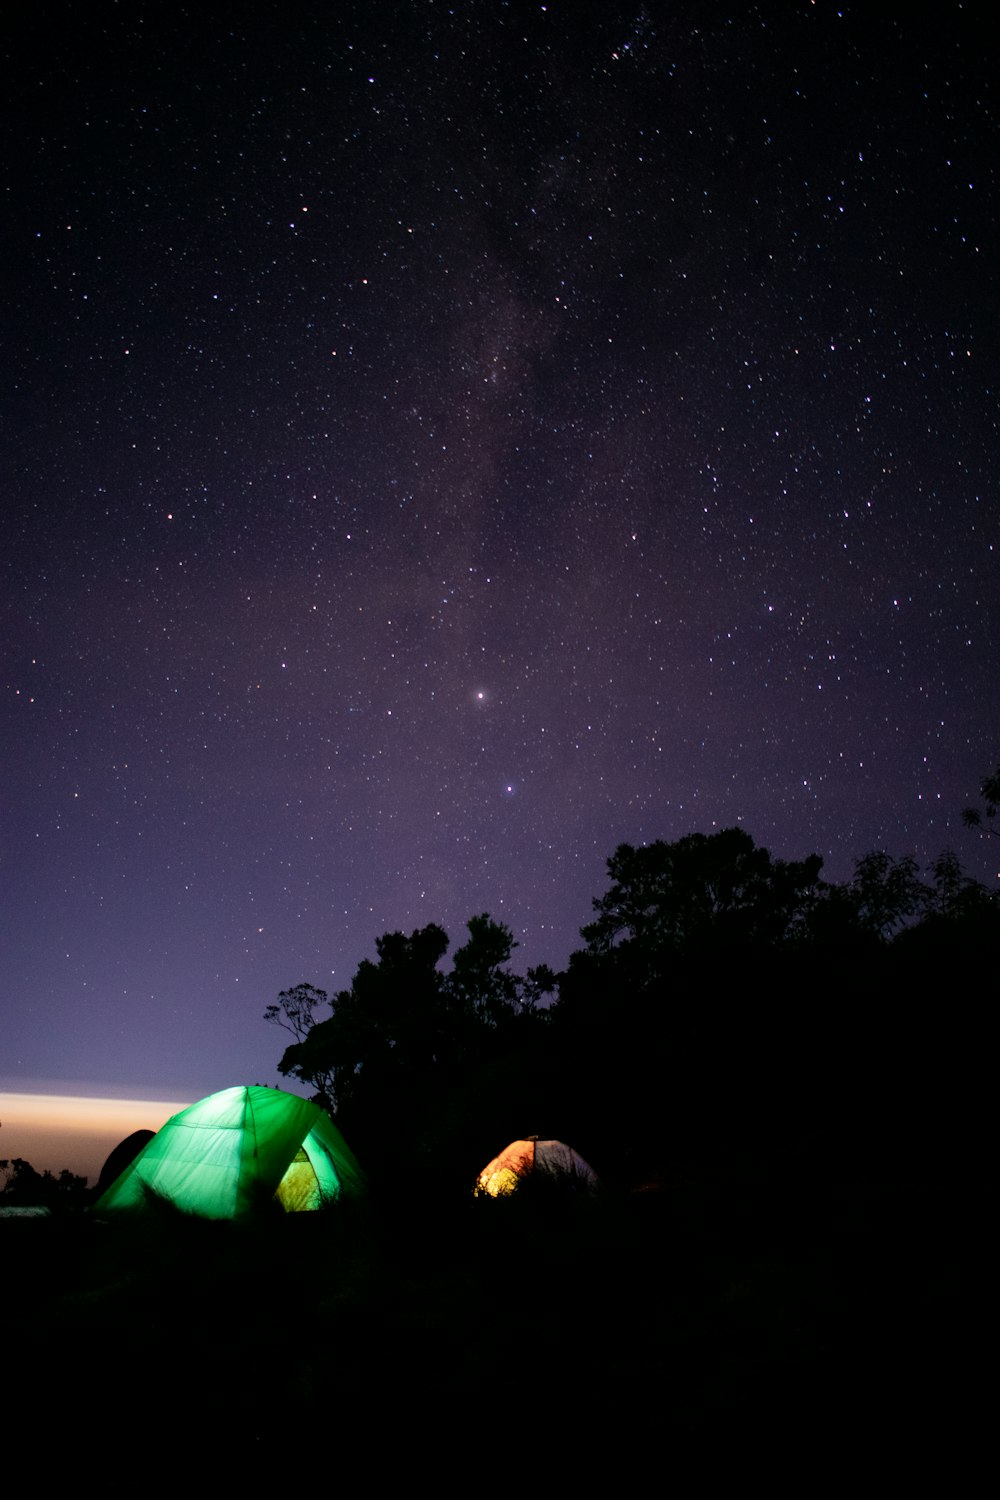 별이 가득한 밤하늘 아래 앉아 있는 두 개의 텐트